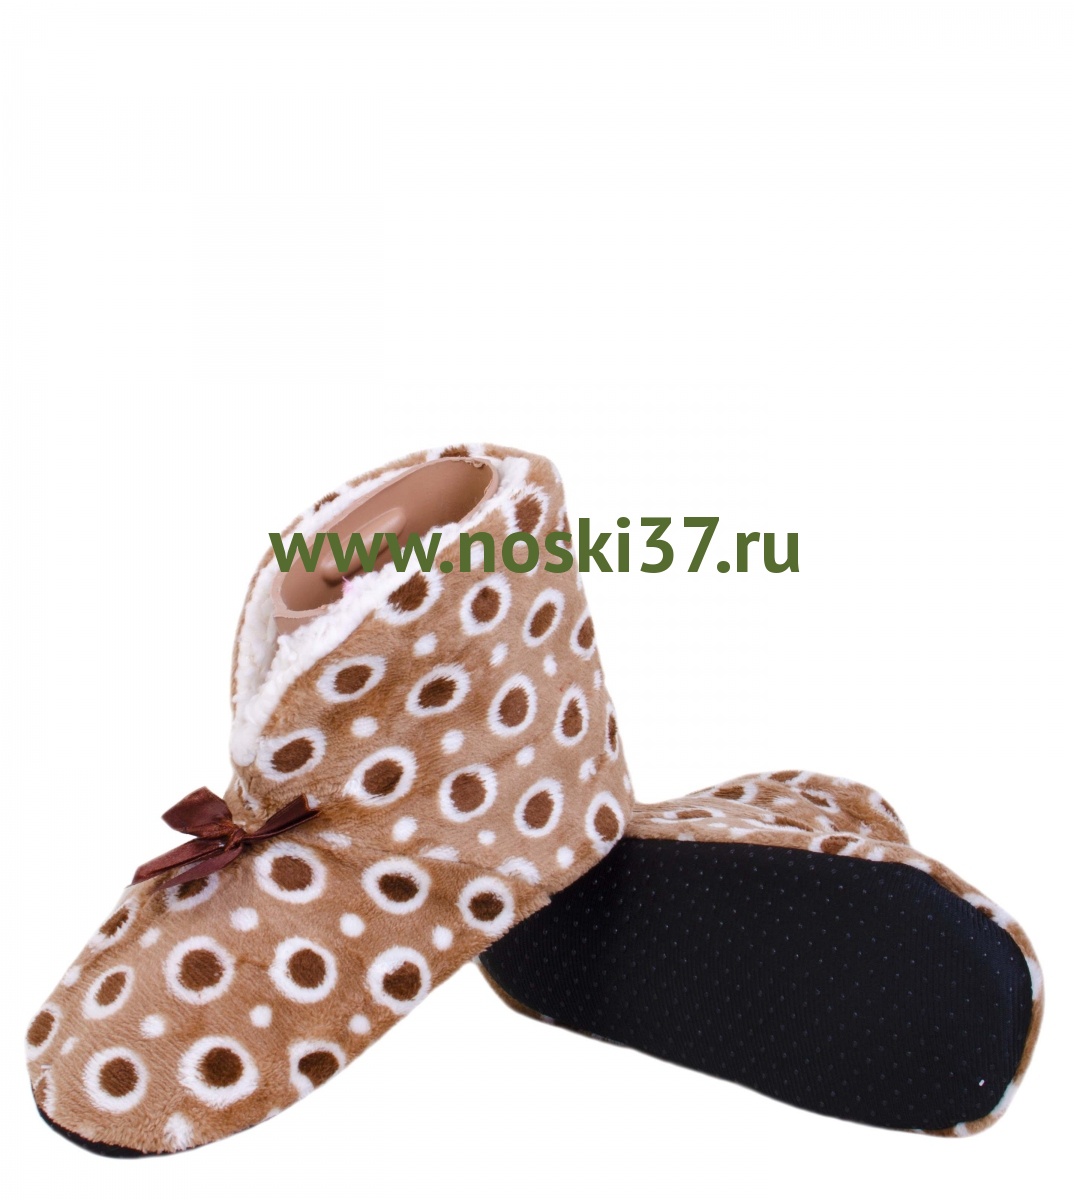 Носки- тапки женские "Socks" № 15-62 купить оптом и мелким оптом, низкие цены от магазина Комфорт(noski37) для всей семьи с доставка по всей России от производителя.